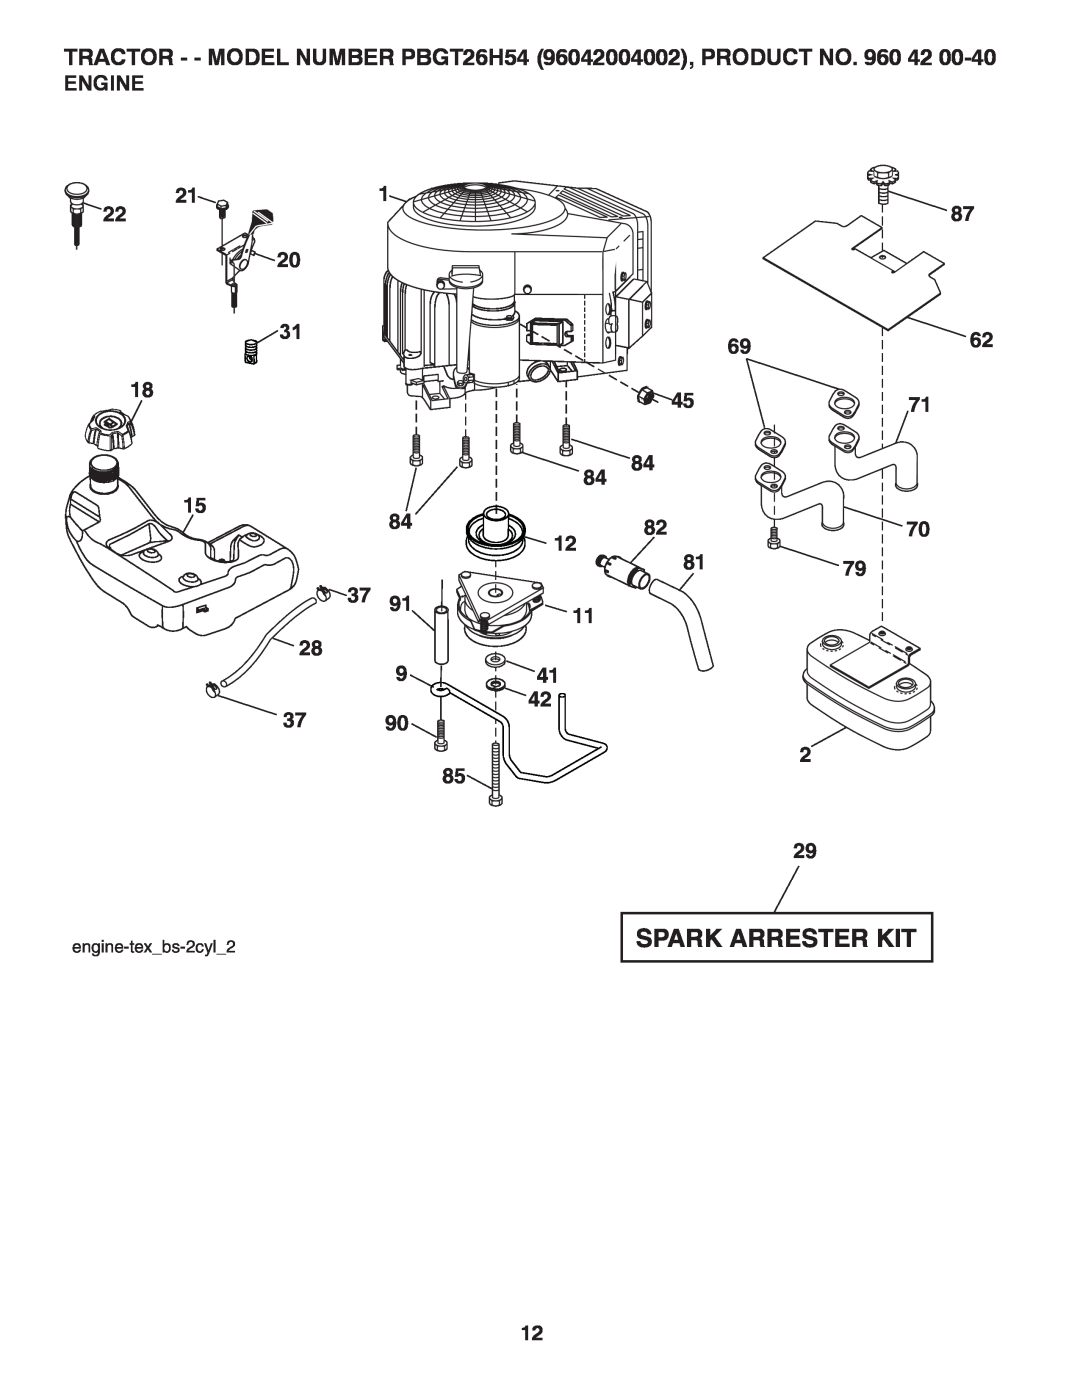 Poulan 417307 manual Engine, Spark Arrester Kit, TRACTOR - - MODEL NUMBER PBGT26H54 96042004002, PRODUCT NO. 960 